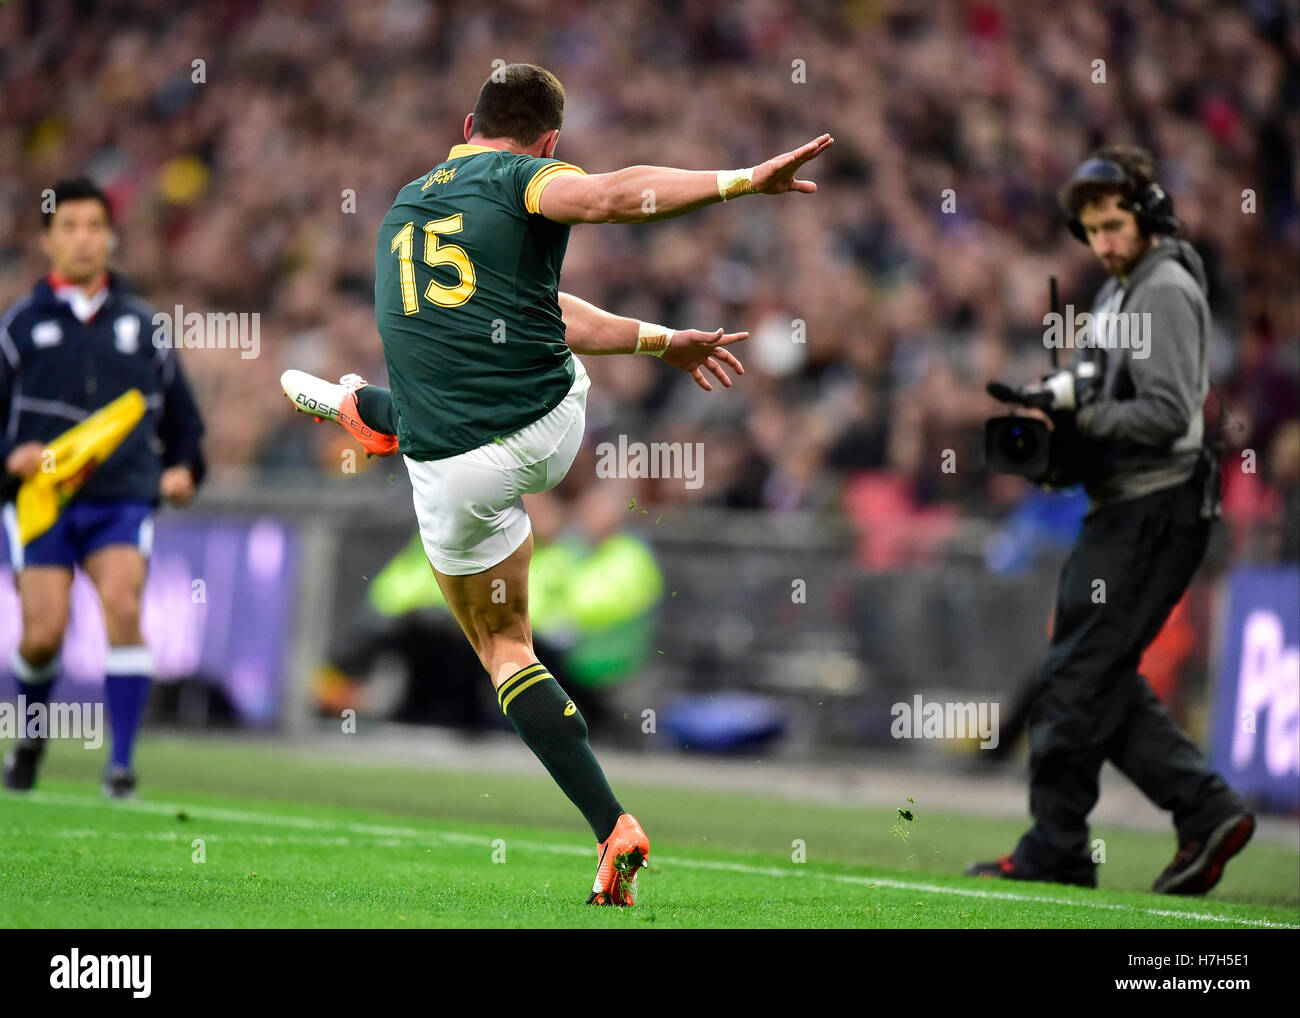 Londra, Inghilterra - 5 Novembre, 2016: Jesse Kriel (ZAF) prende un tick durante la partita di rugby tra i barbari vs Sud Africa allo Stadio di Wembley. Credito: Taka Wu/Alamy Live News Foto Stock